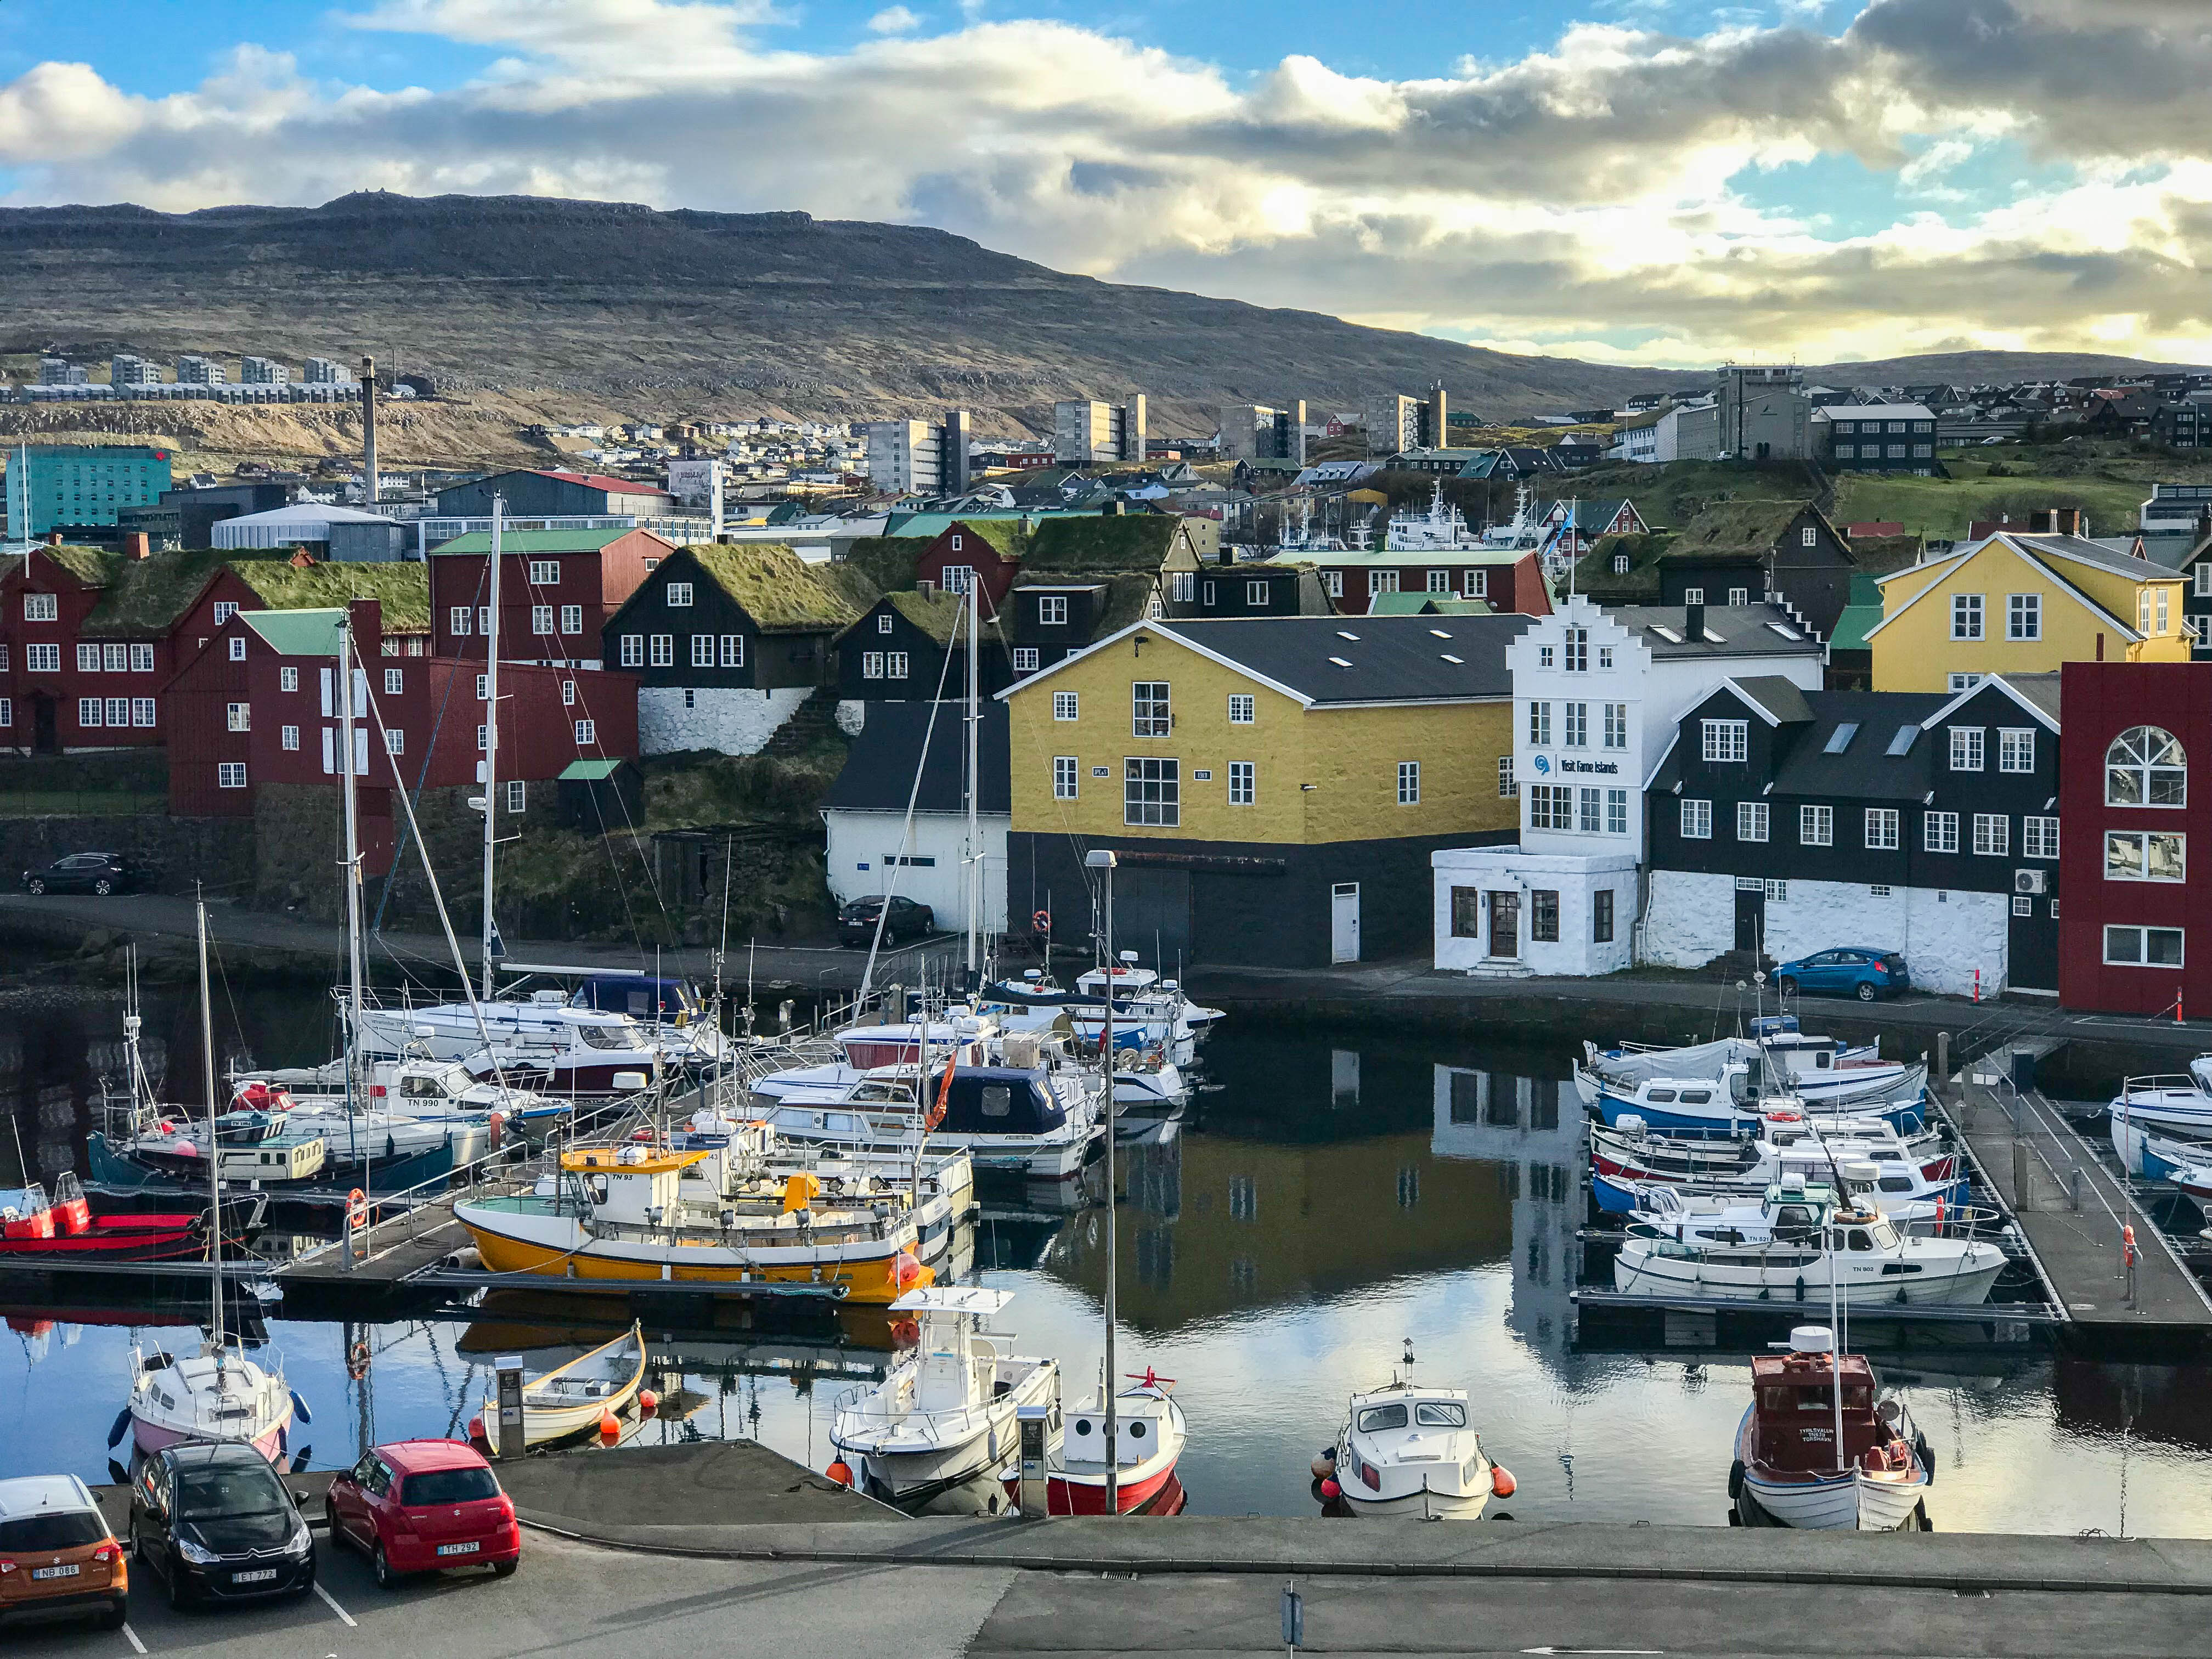 Torshovn Faroe Islands 